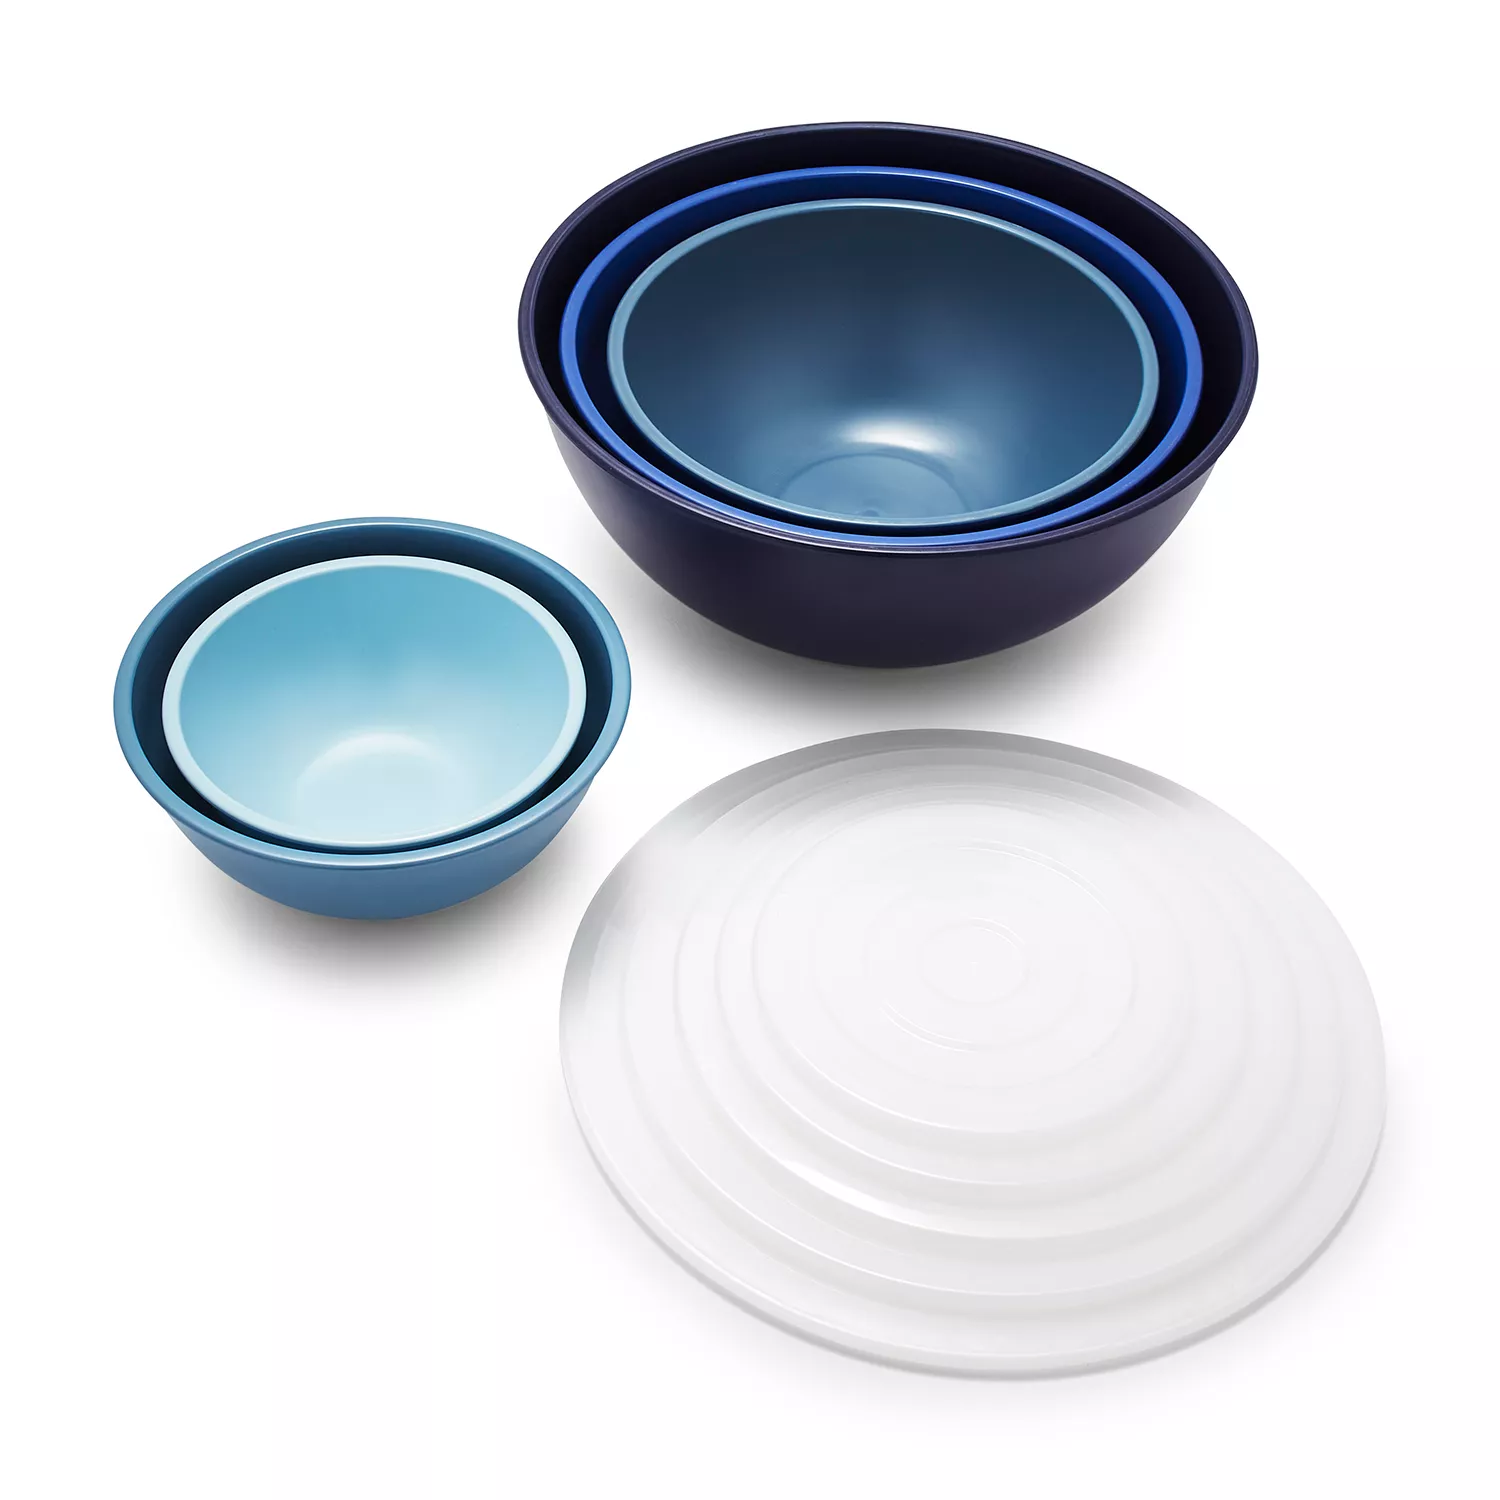 Sur La Table Mixing Bowls with Lids, Set of 5, Blue